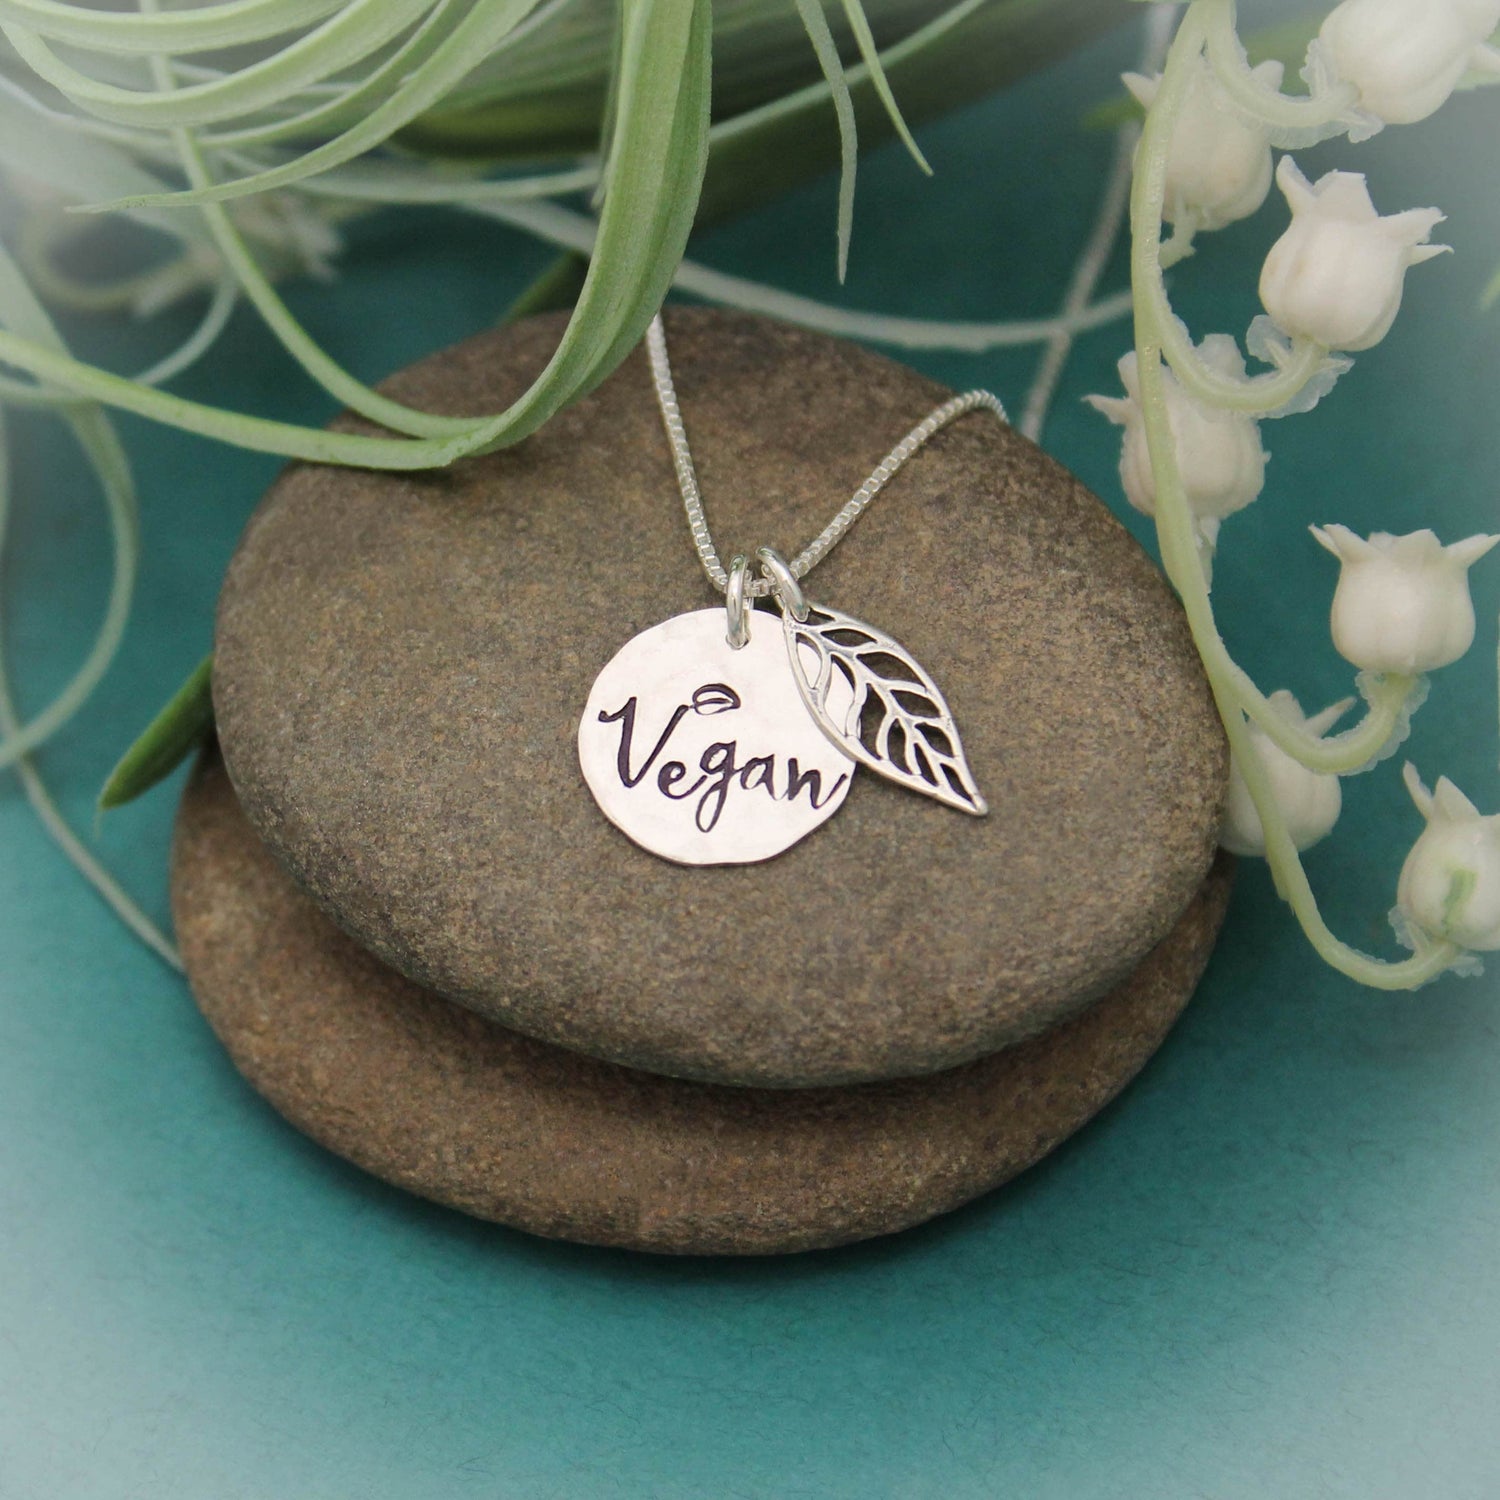 Vegan Leaf Necklace, Vegan Pride Necklace, Vegan Jewelry, Gift for Vegans, Sterling Silver Vegan Necklace, Animal Lover Gift, Vegetarian